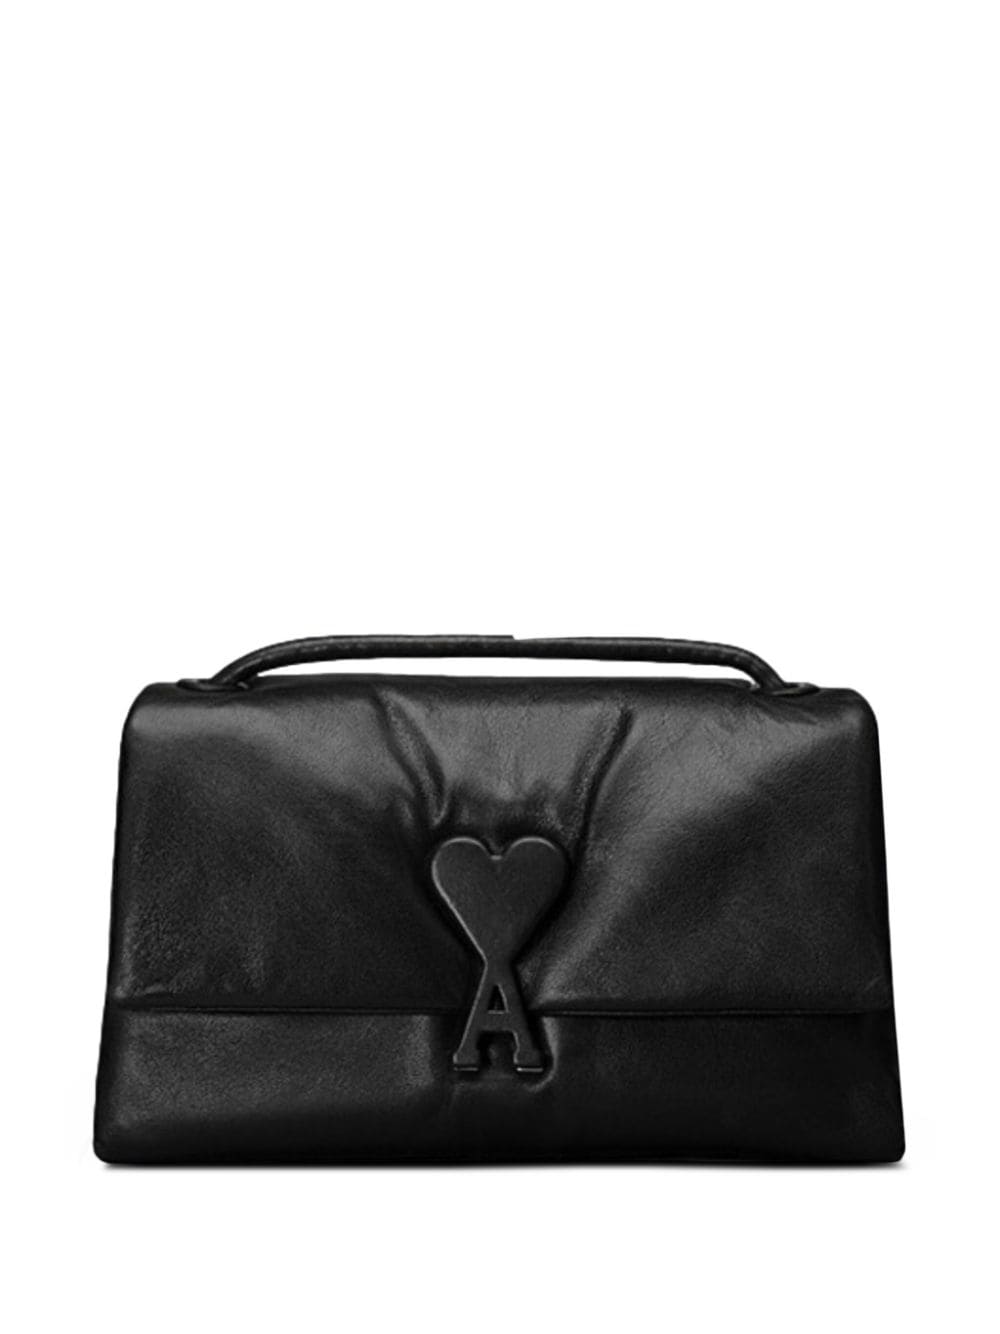 Image 1 of AMI Paris Voulez-Vous leather shoulder bag